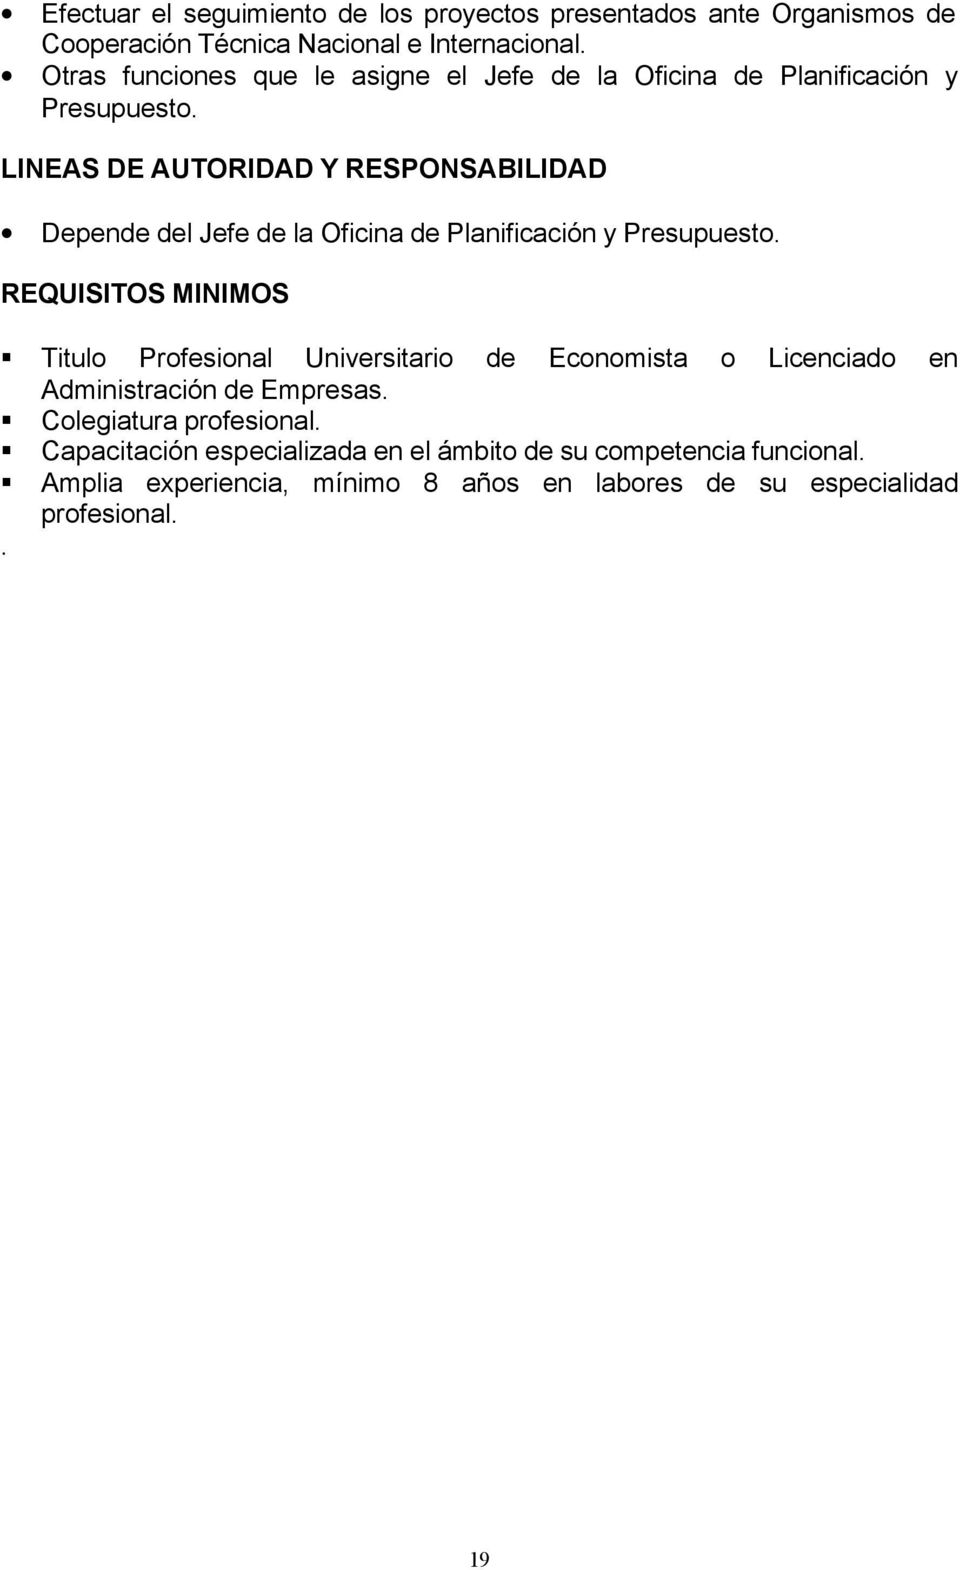 de Planificación y REQUISITOS MINIMOS Titulo Profesional Universitario de Economista o Licenciado en Administración de Empresas.